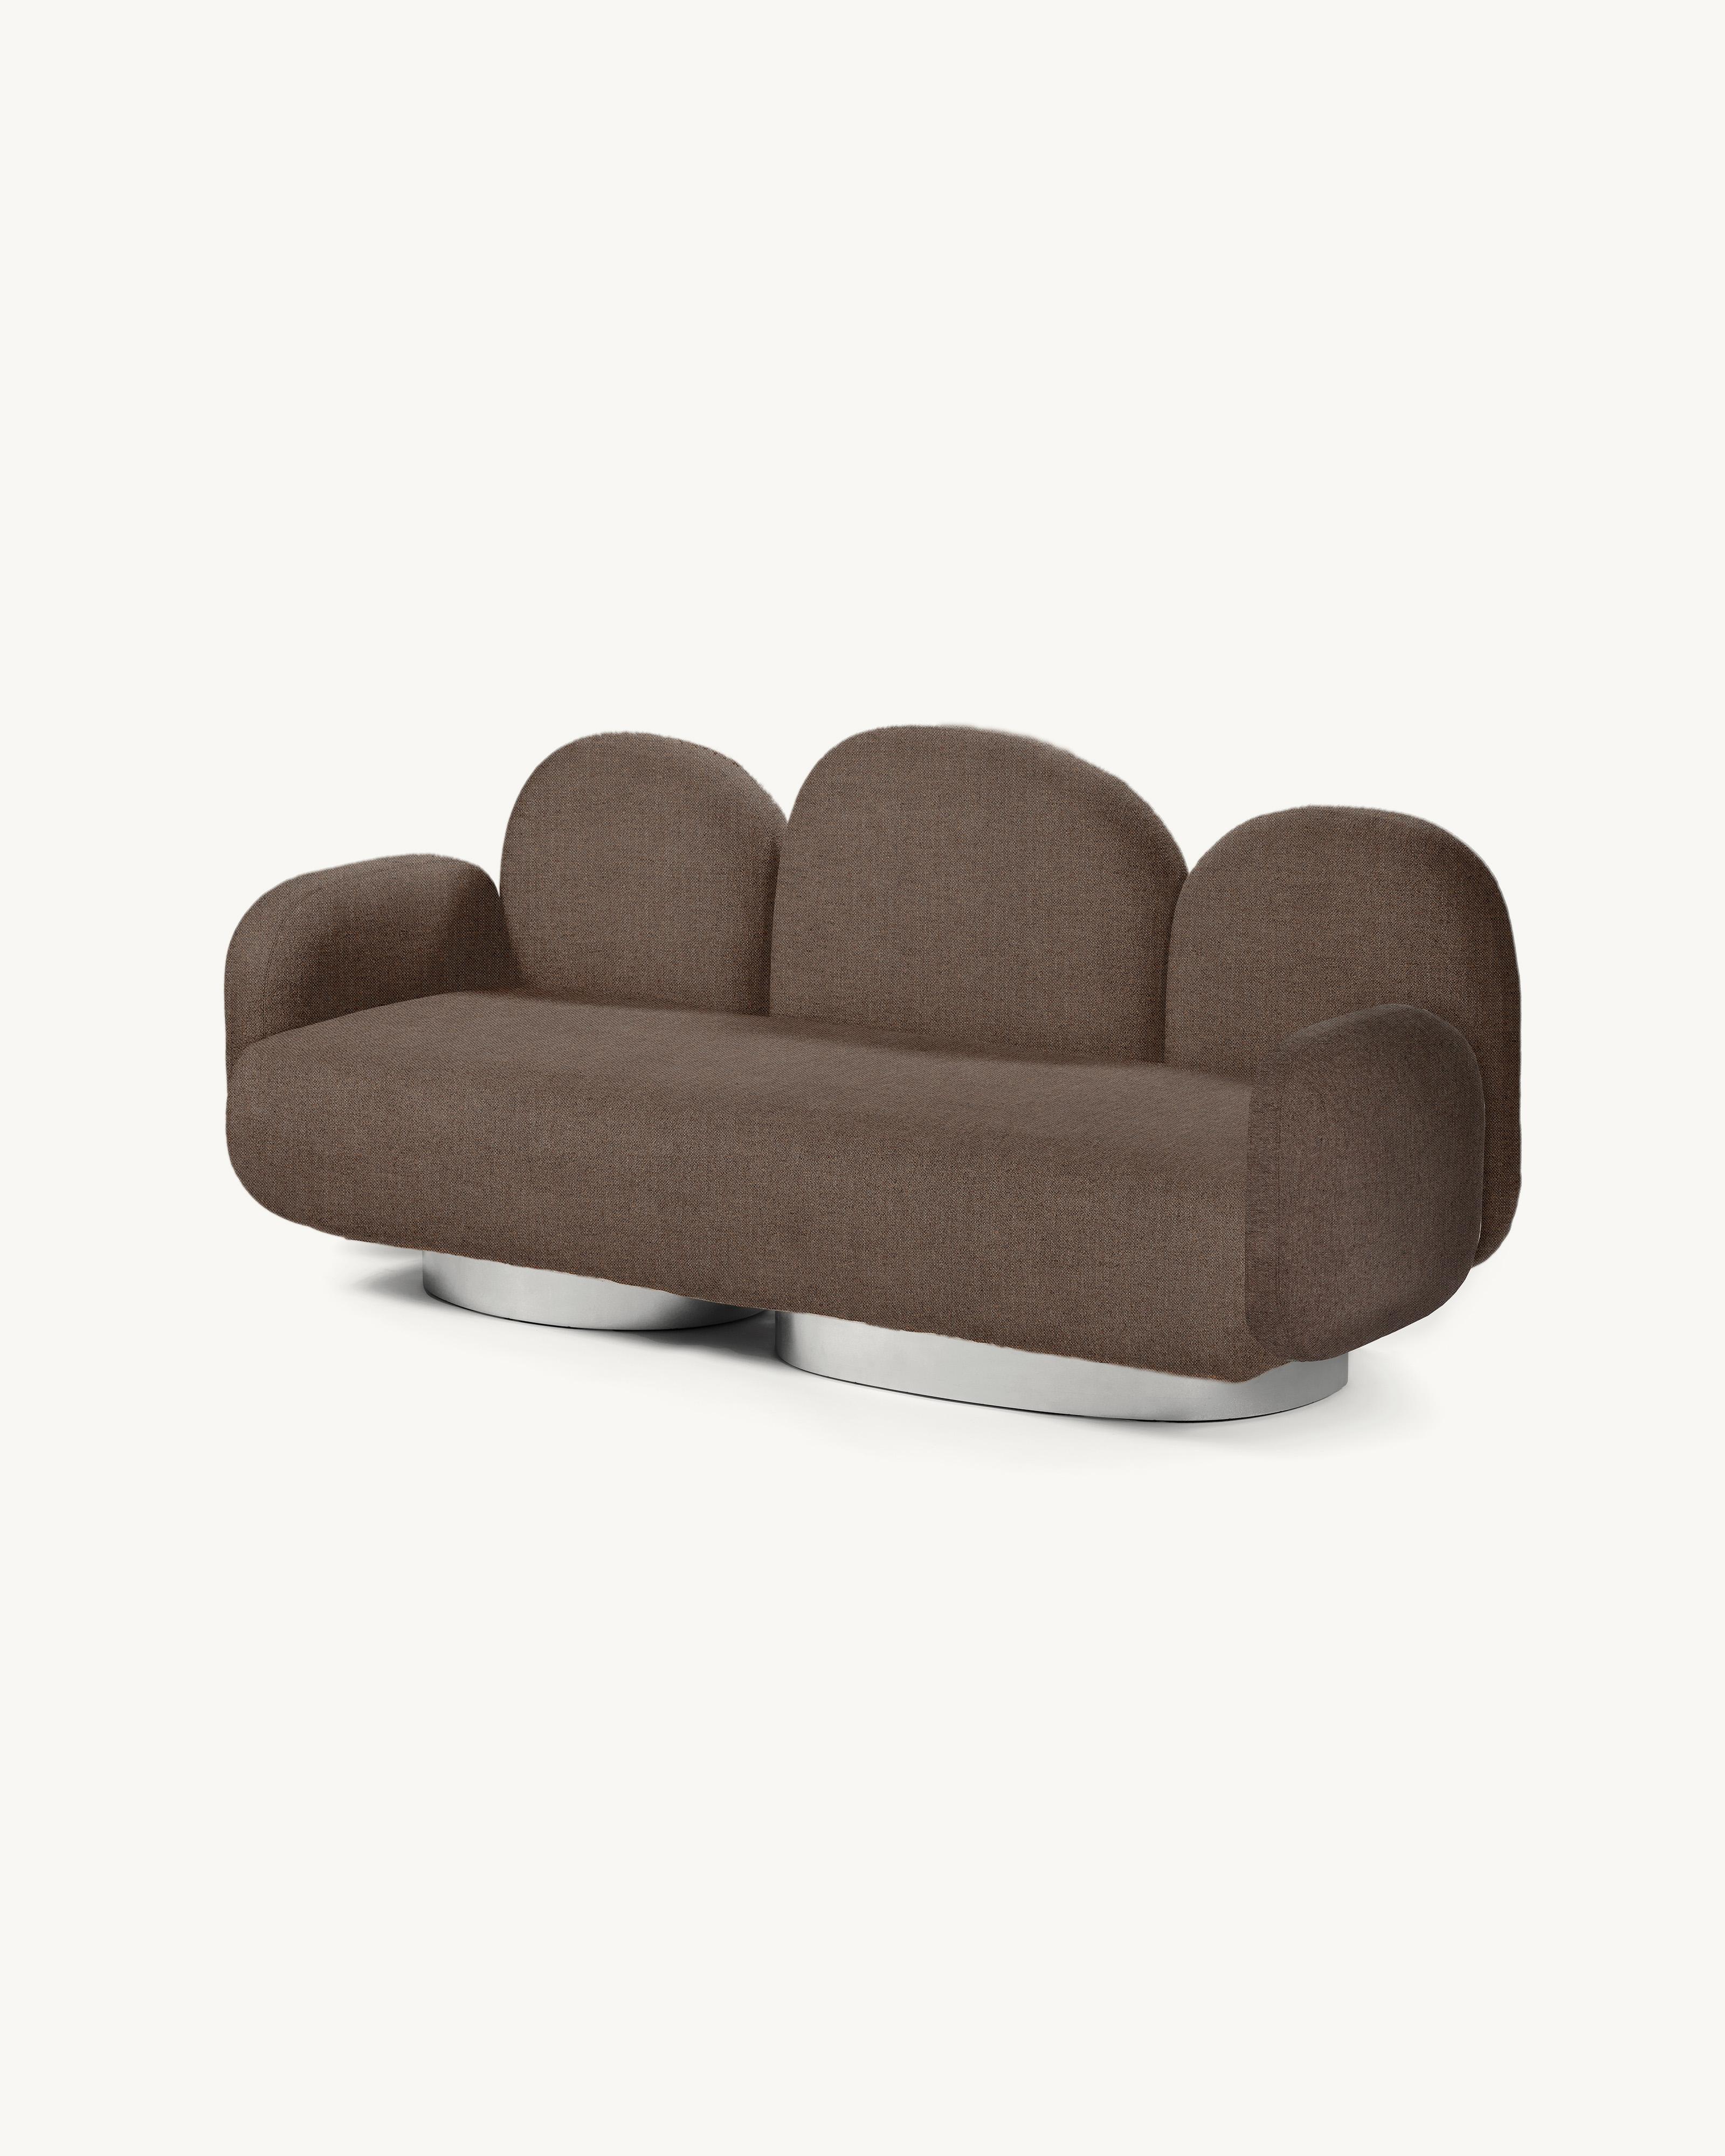 Modular Sofa Assemble 2-Sitzer-Sofa mit 2 Armlehnen 
Entworfen von Destroyers/Builders x Valery Objects
Polsterung: Sevo Rust (V9020344)

Abmessungen: L 87 B 213 H 85 CM (SH 40 cm)
MATERIALIEN: Holz, Aluminium und Polstermöbel

Das ASSEMBLE-Sofa